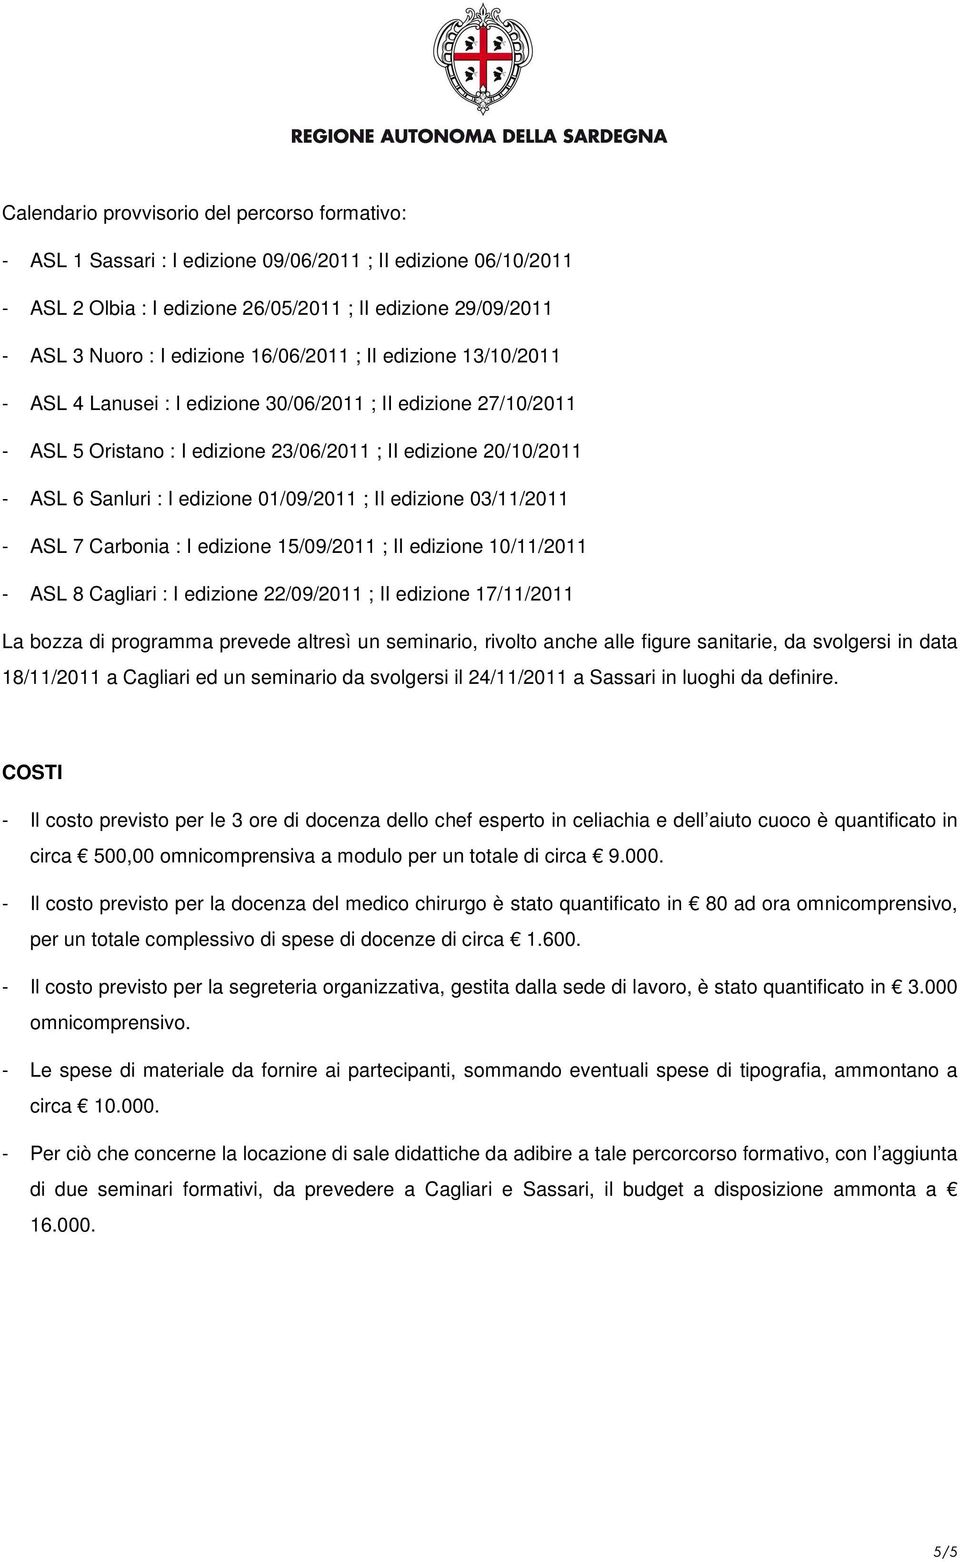 edizione 01/09/2011 ; II edizione 03/11/2011 - ASL 7 Carbonia : I edizione 15/09/2011 ; II edizione 10/11/2011 - ASL 8 Cagliari : I edizione 22/09/2011 ; II edizione 17/11/2011 La bozza di programma